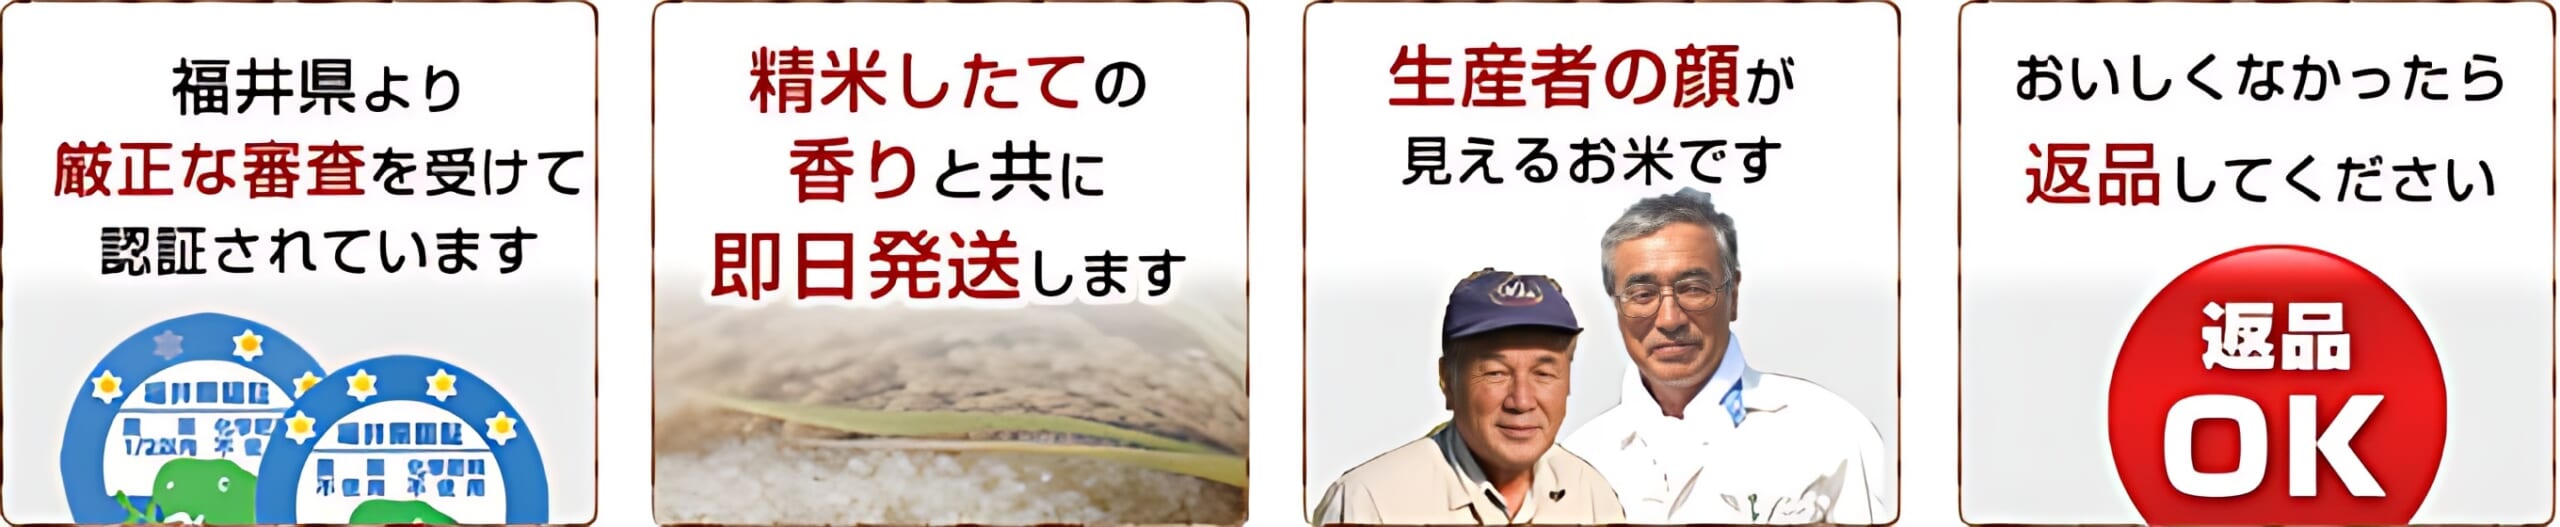 当店の無農薬米は、福井県より厳正な審査を受けています。